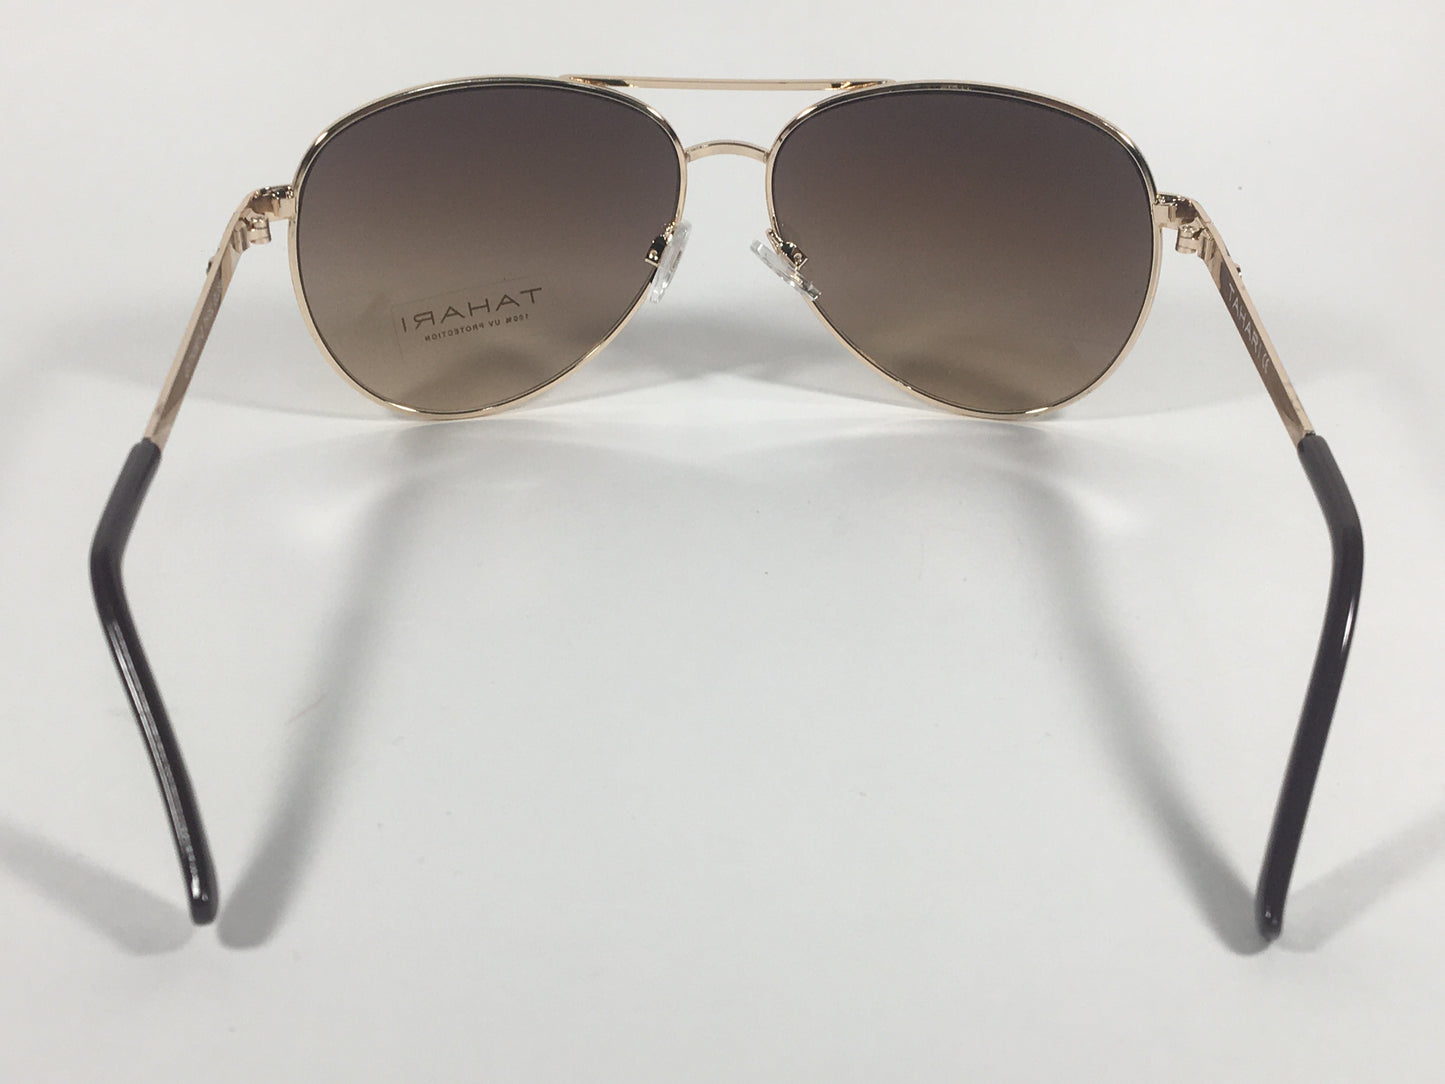 Tahari Aviator Sunglasses Brown And Gold Metal Brown Gradient Lens TH752 GLDBN - Sunglasses